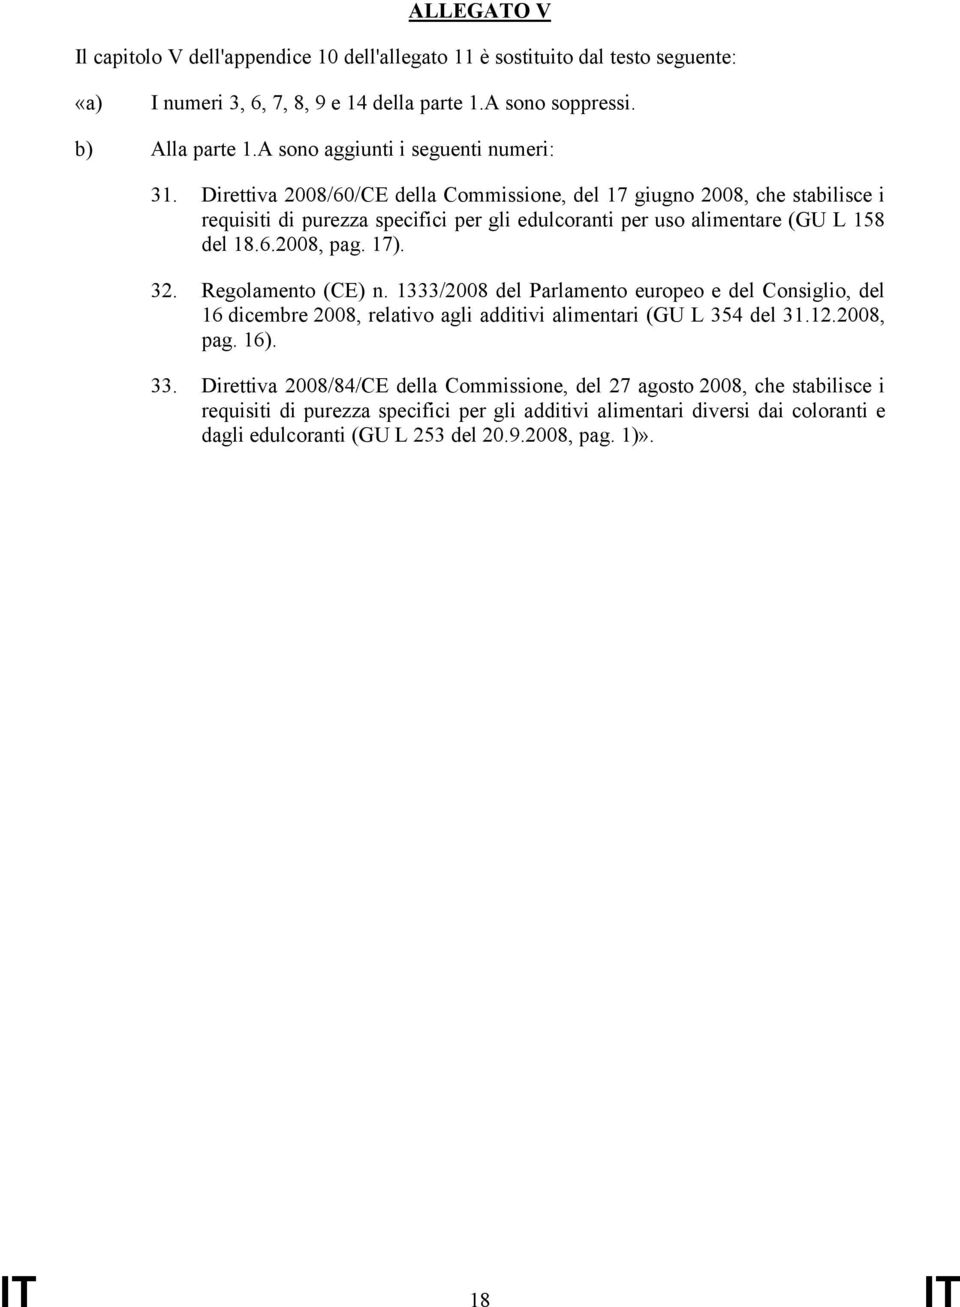 Direttiva 2008/60/CE della Commissione, del 17 giugno 2008, che stabilisce i requisiti di purezza specifici per gli edulcoranti per uso alimentare (GU L 158 del 18.6.2008, pag. 17). 32.